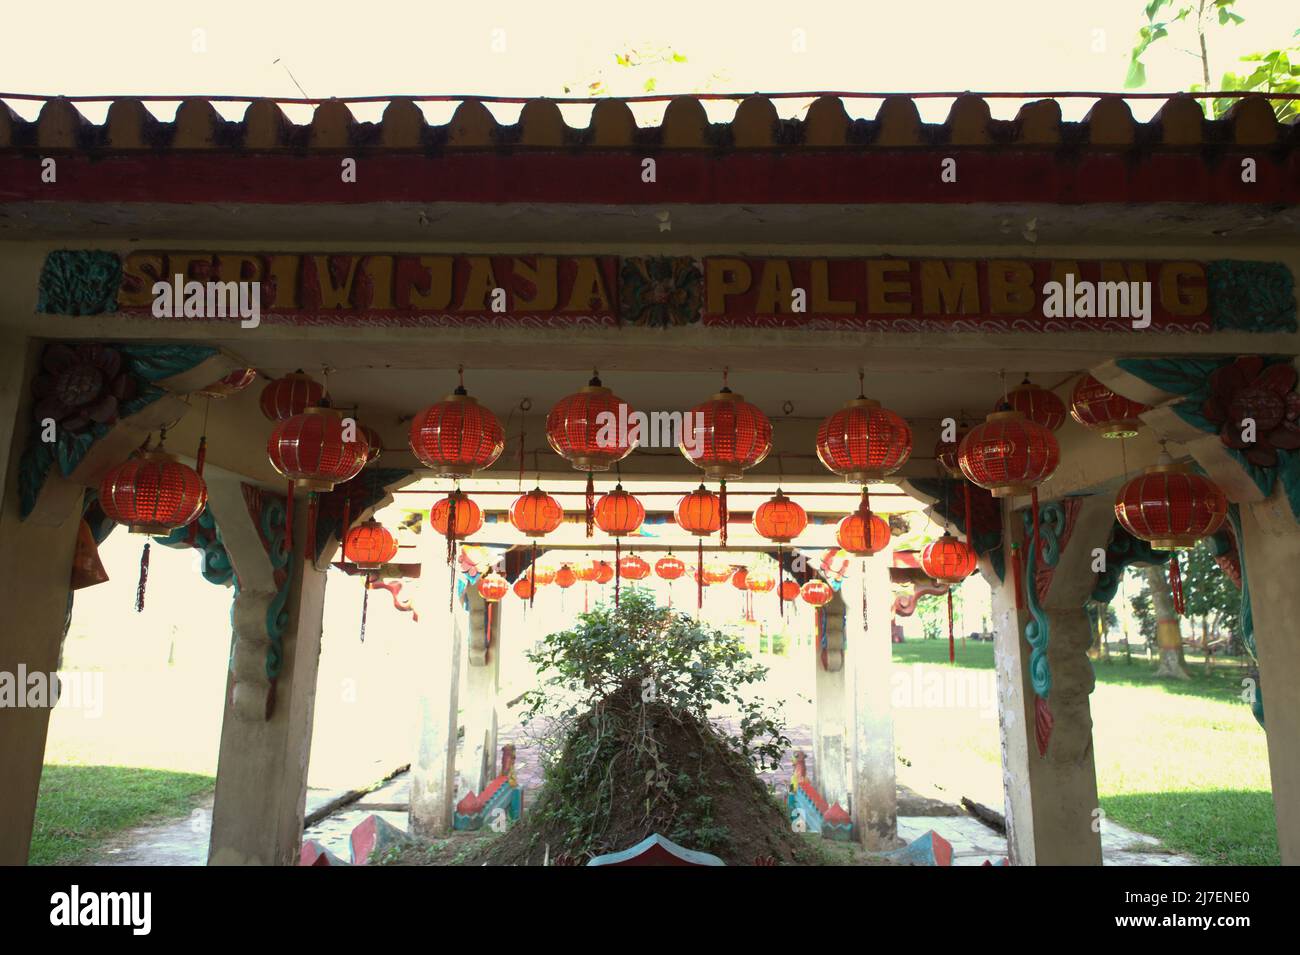 Eine Dachkonstruktion mit einem schriftlichen Schild, auf dem „Seriwijaya (Srivijaya) Palembang“ steht, an einem alten Grab im Tempelkomplex Pulo Kemaro (Kemaro-Insel) – einem Verehrungsort für Buddhismus, Taoismus und Konfuzianismus in Palembang, Südsumatra, Indonesien. Laut einer lokalen Folklore gehörte das Grab der Prinzessin von Srivijaya. Stockfoto